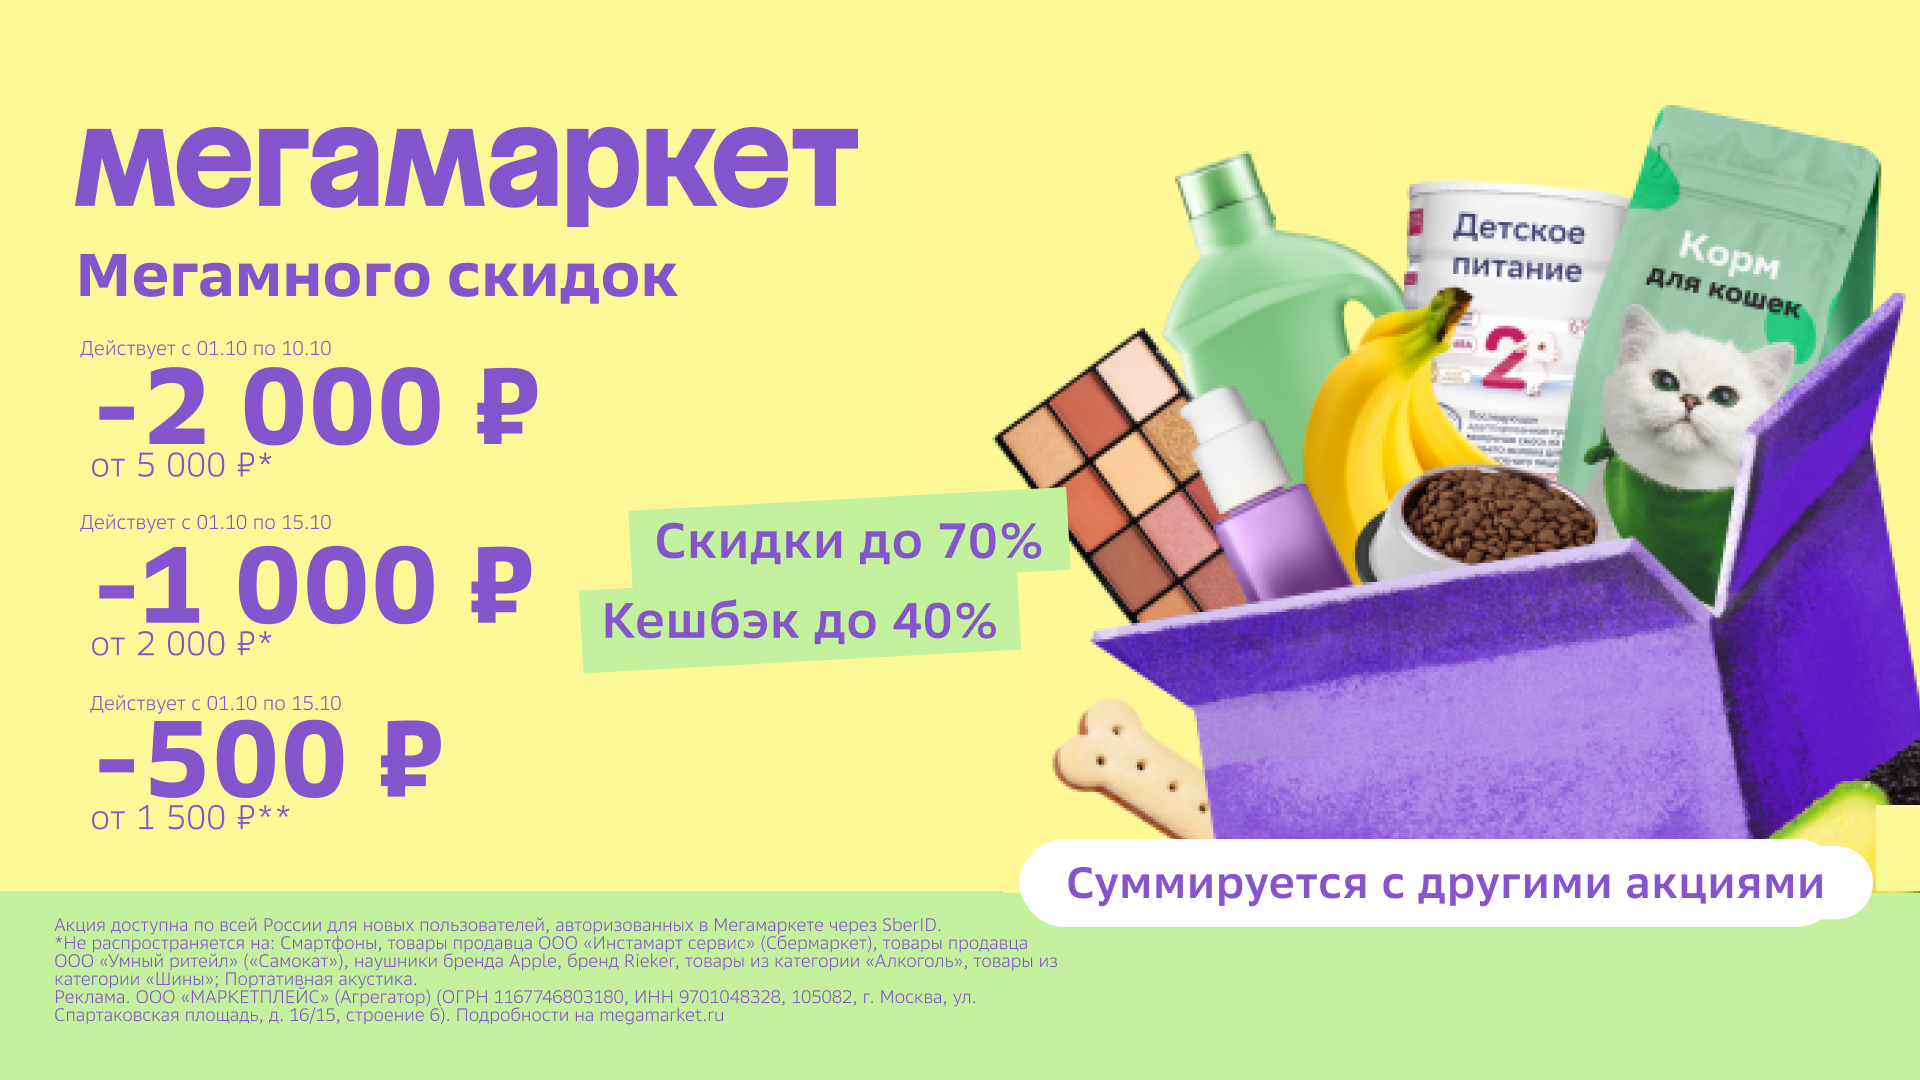 Промокод Мегамаркет – скидка 1000 руб. от 2000 руб. для новых пользователей!